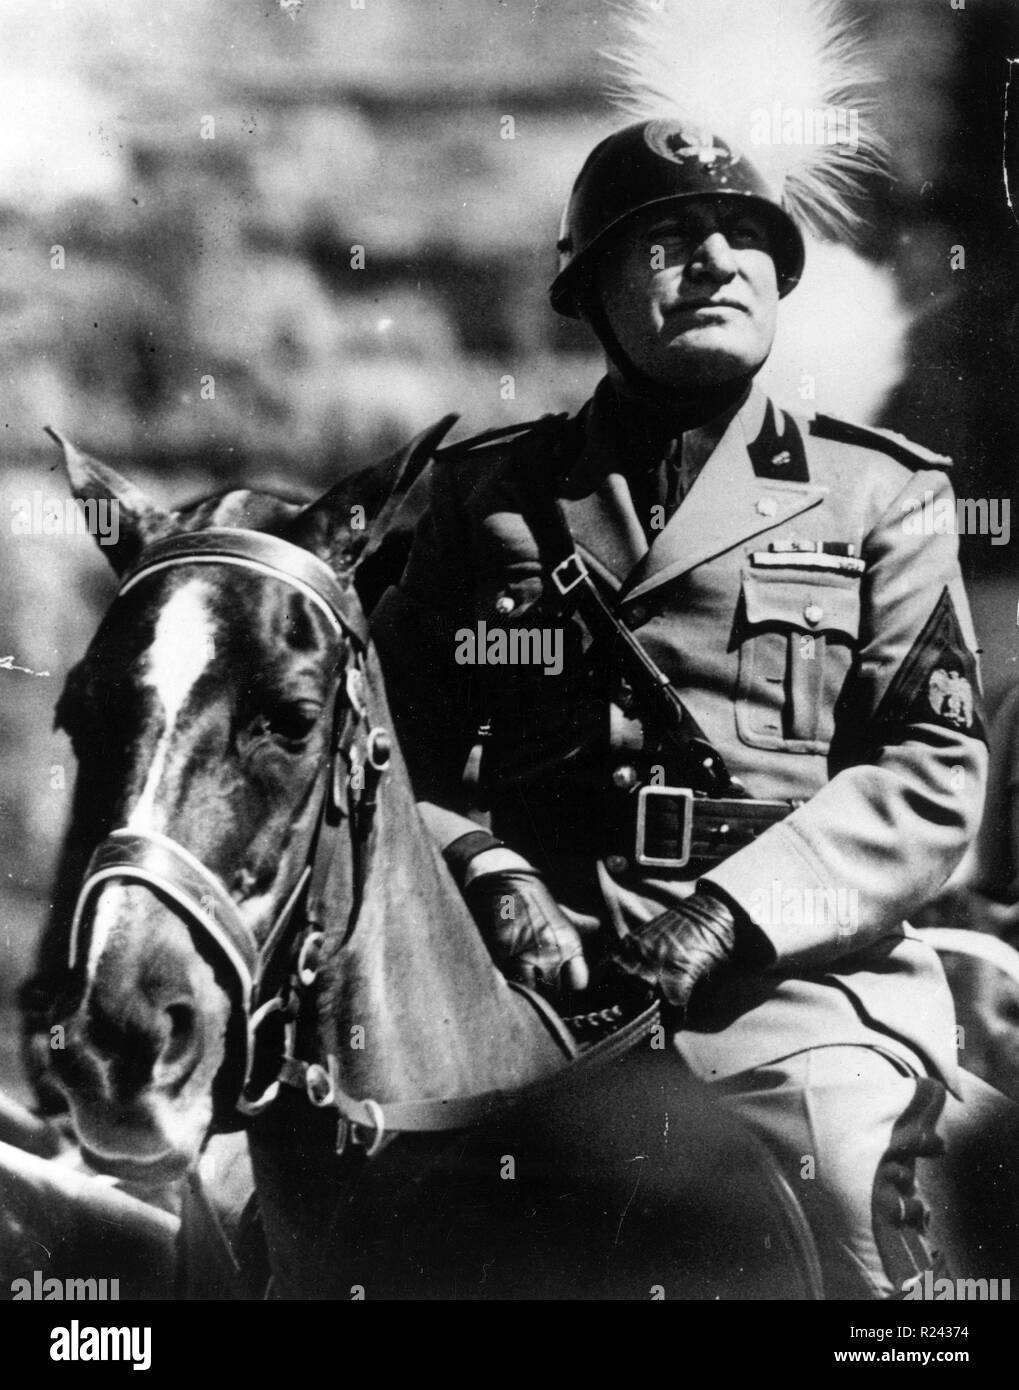 Benito Mussolini (1883-1945), homme politique italien, journaliste et leader du parti fasciste National sur l'uniforme en 1936. Banque D'Images